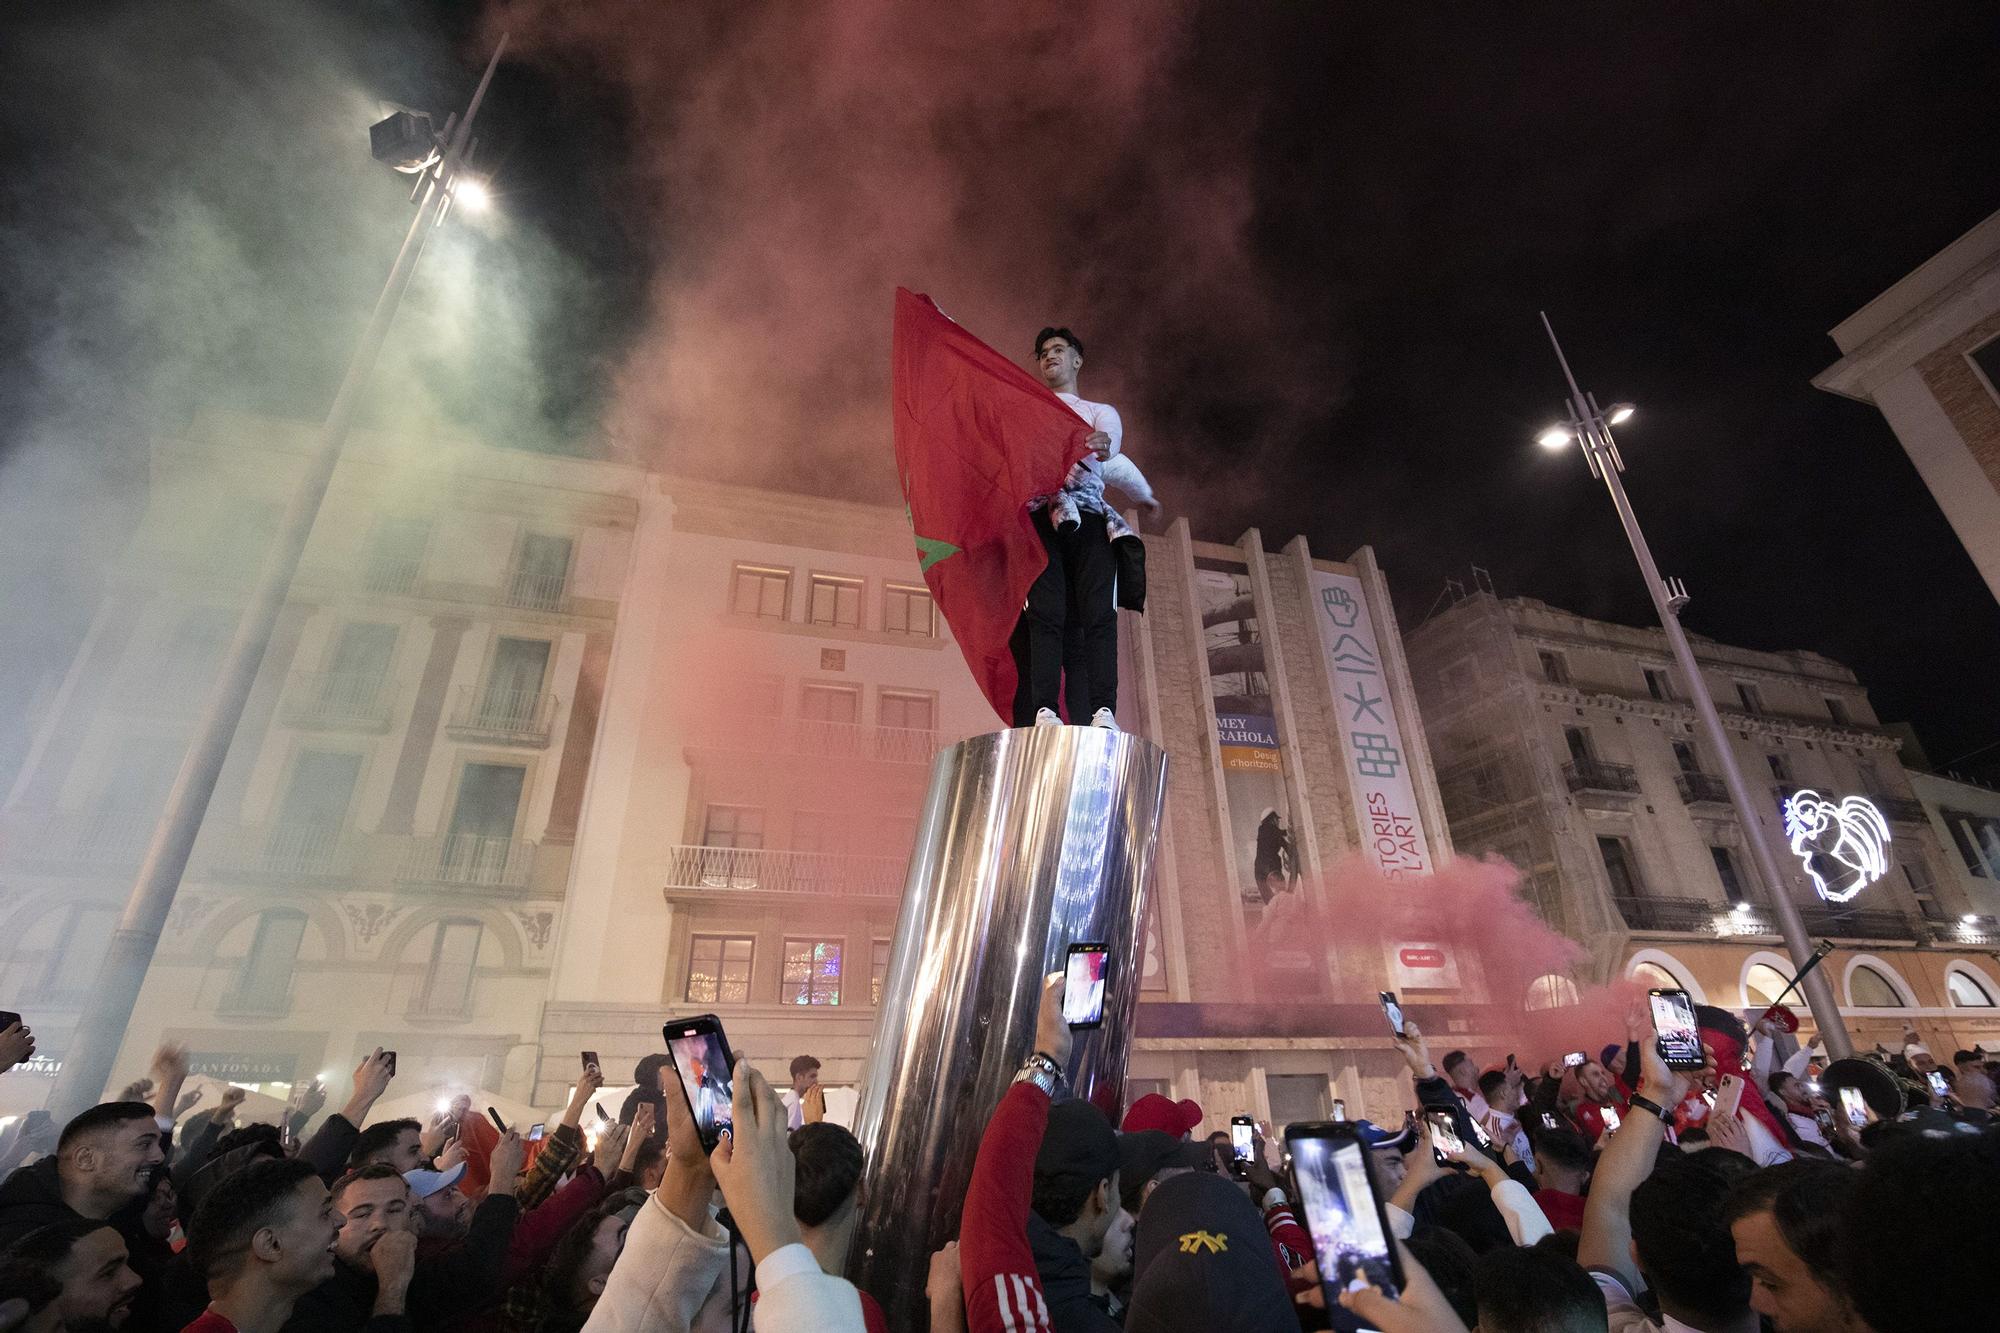 Galeria: Celebració a Marroc de la victòria sobre Espanya